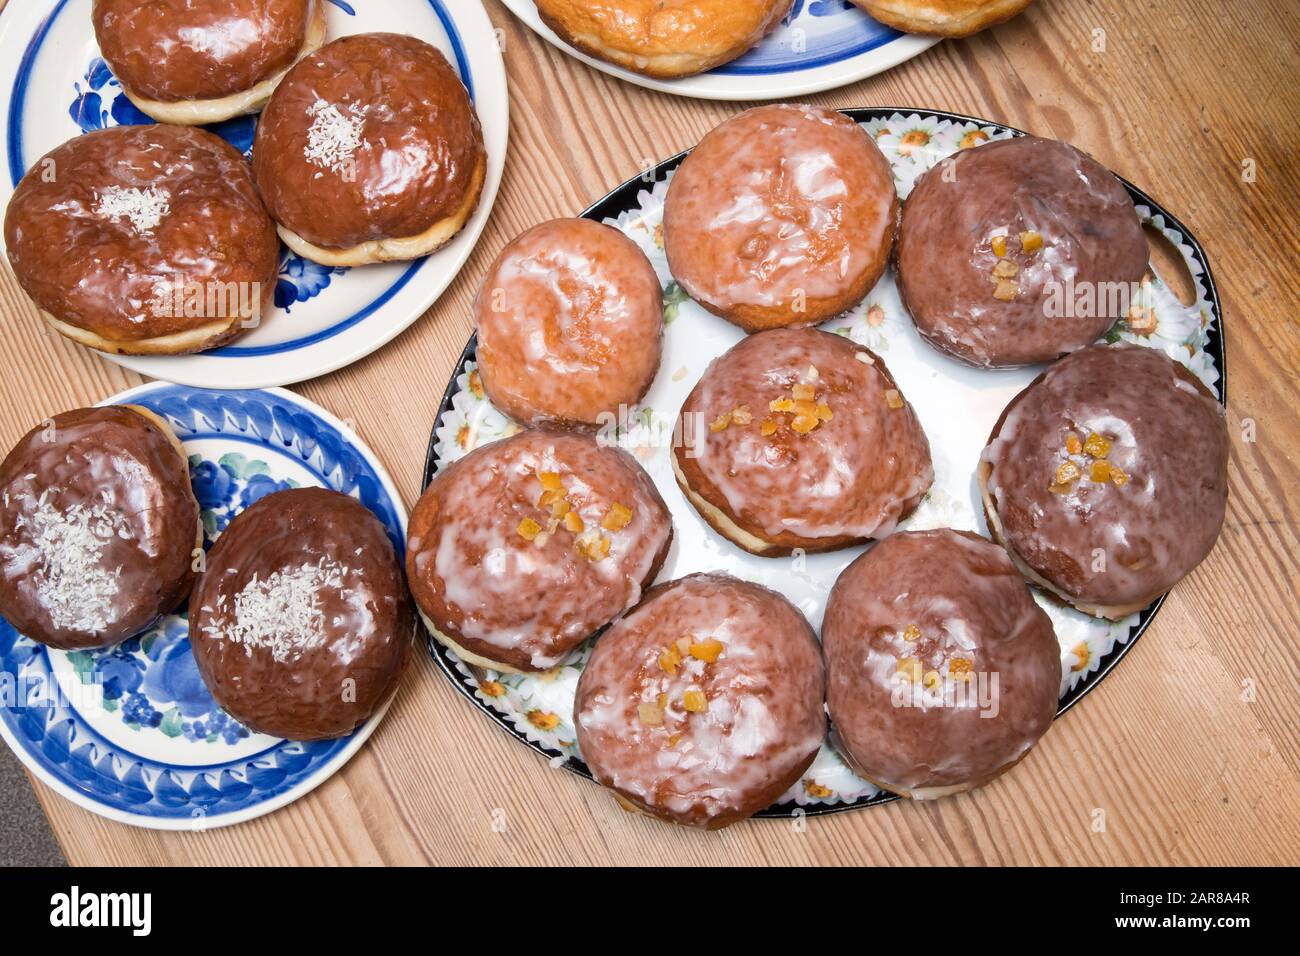 Homemade doughnuts called paczki © Wojciech Strozyk / Alamy Stock Photo Stock Photo